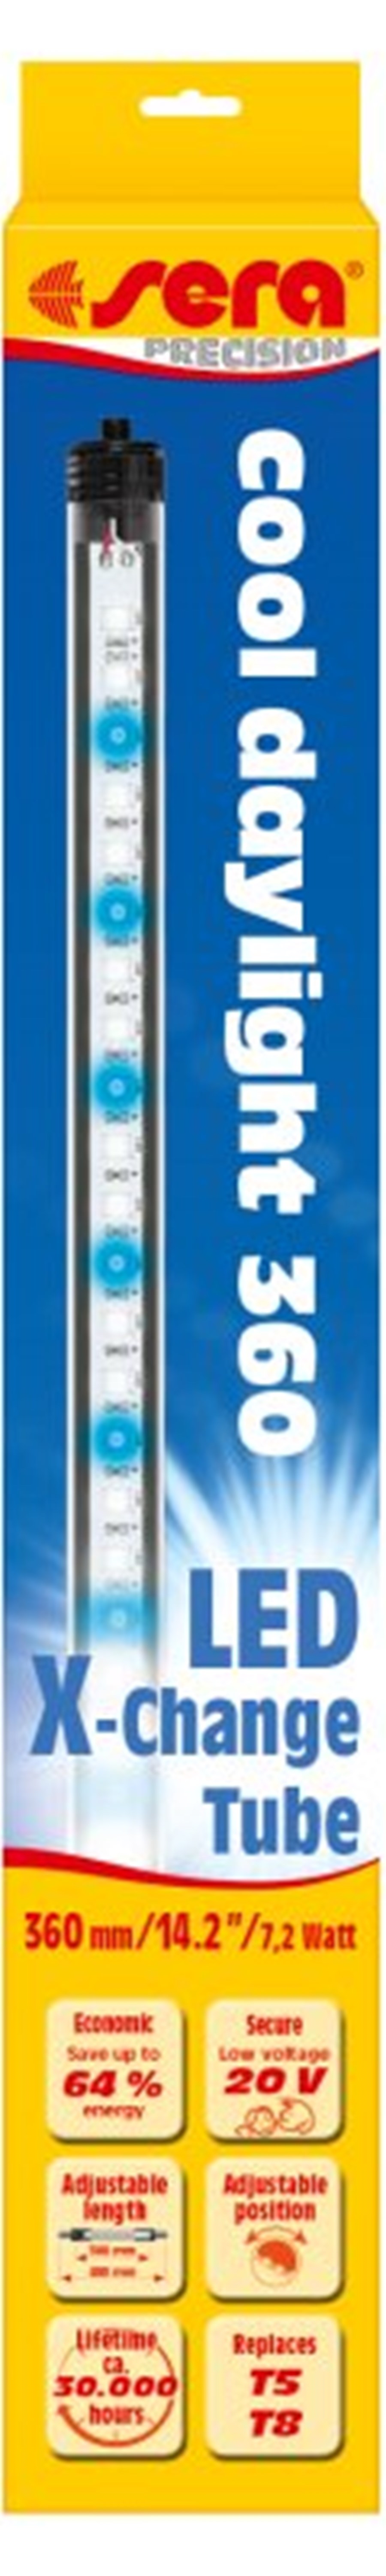 sera LED cool daylight 1420 mm / 27 W